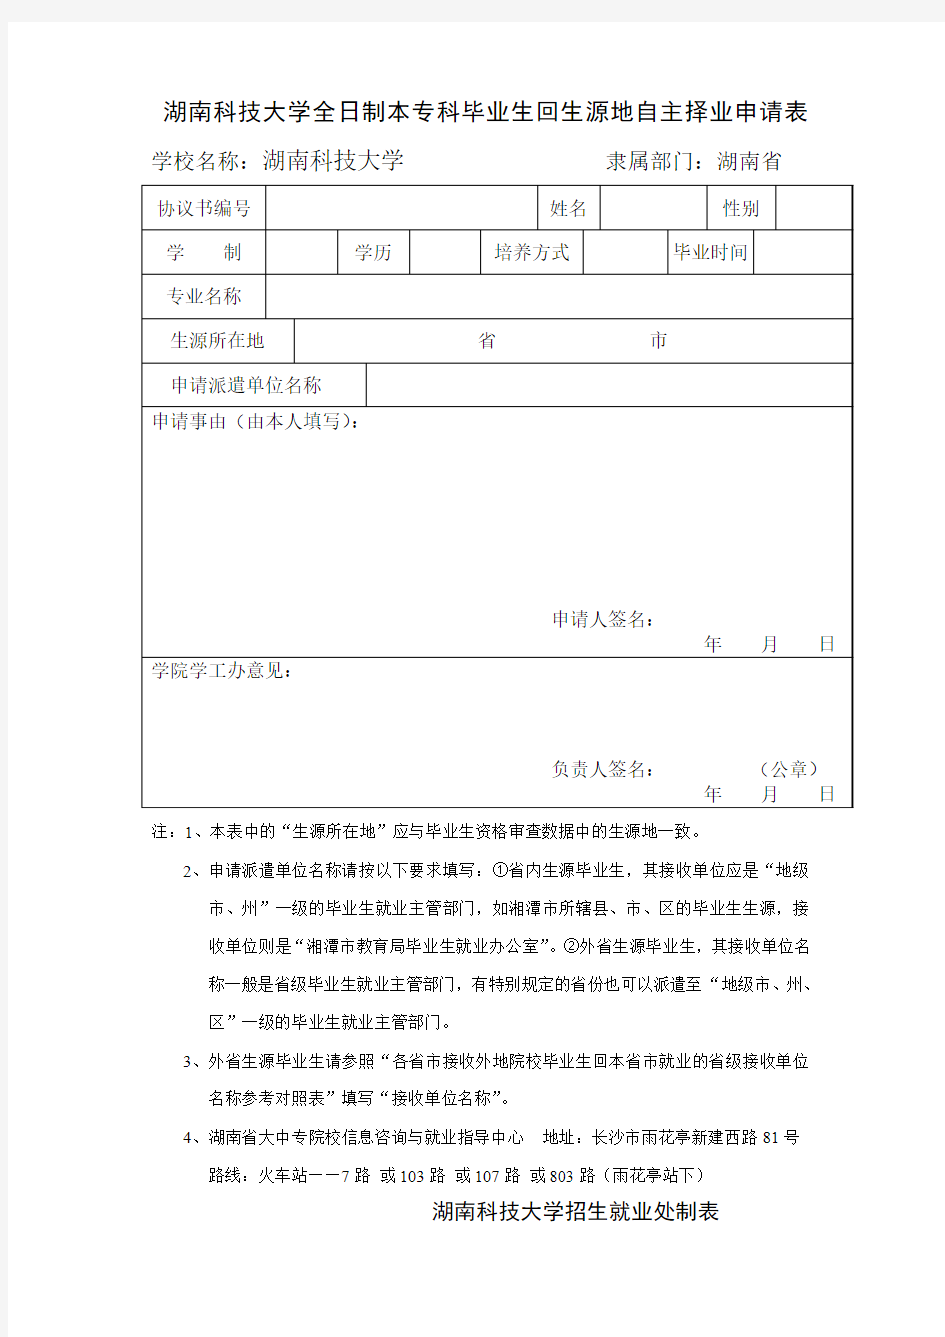 湖南省普通高校毕业生和毕业研究生就业调整改派申请表